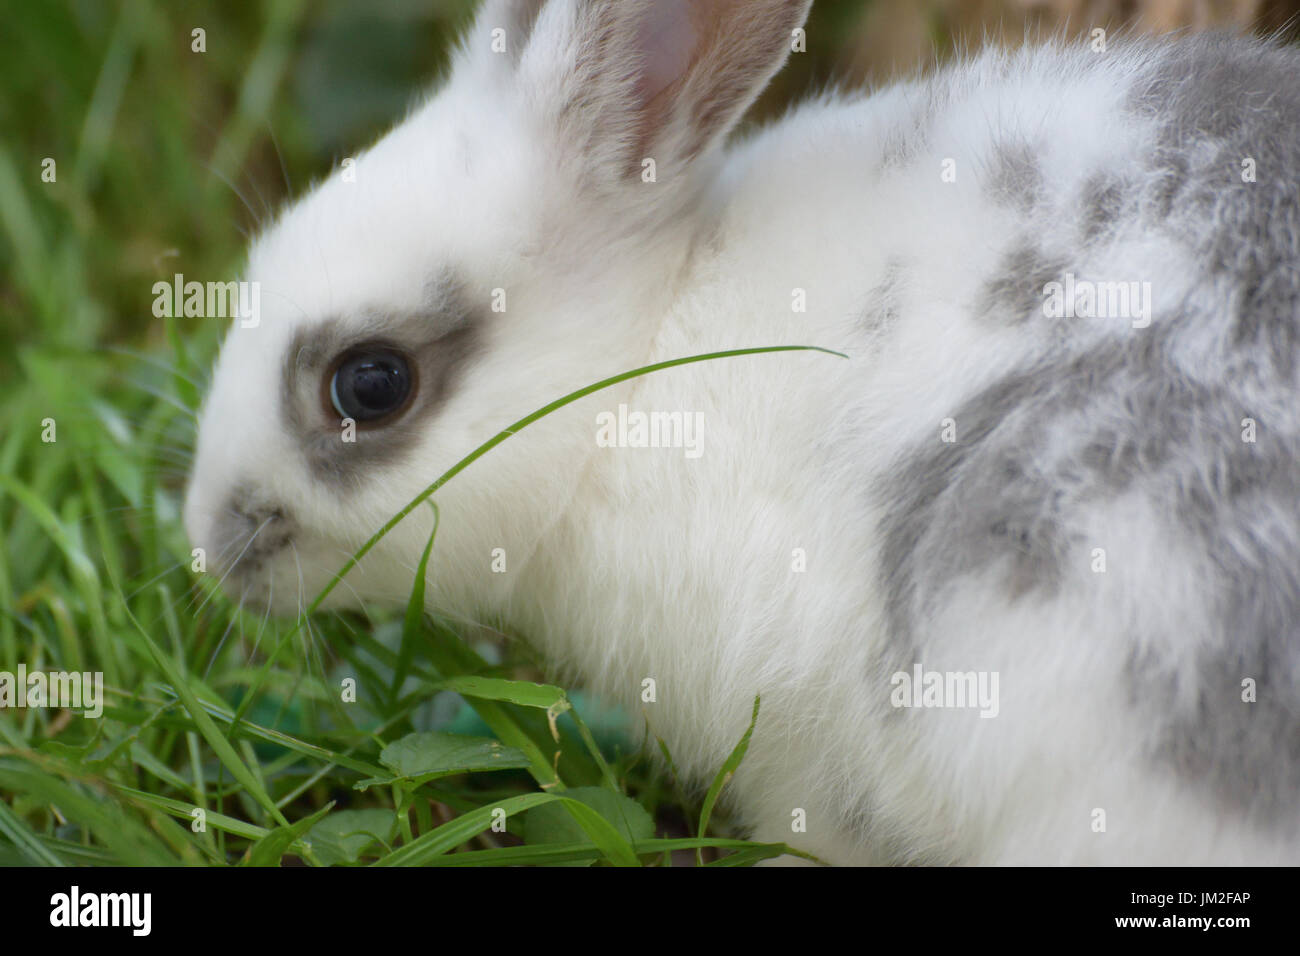 White European rabbit pet grazing Stock Photo